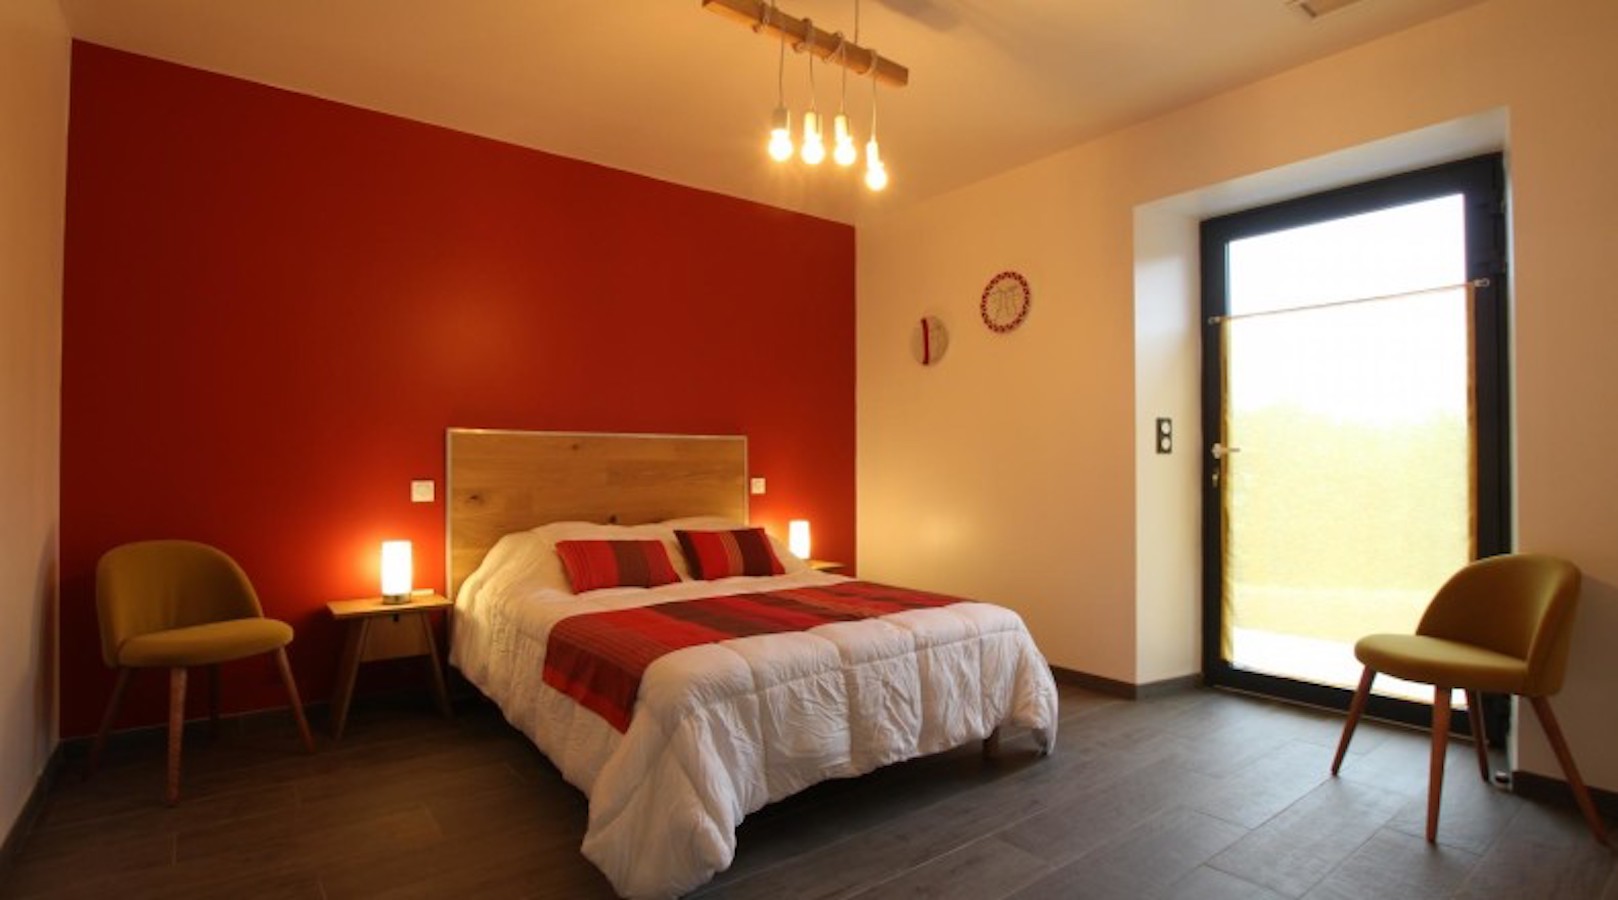 maison othart barrandeia chambre lit double rouge juxue 